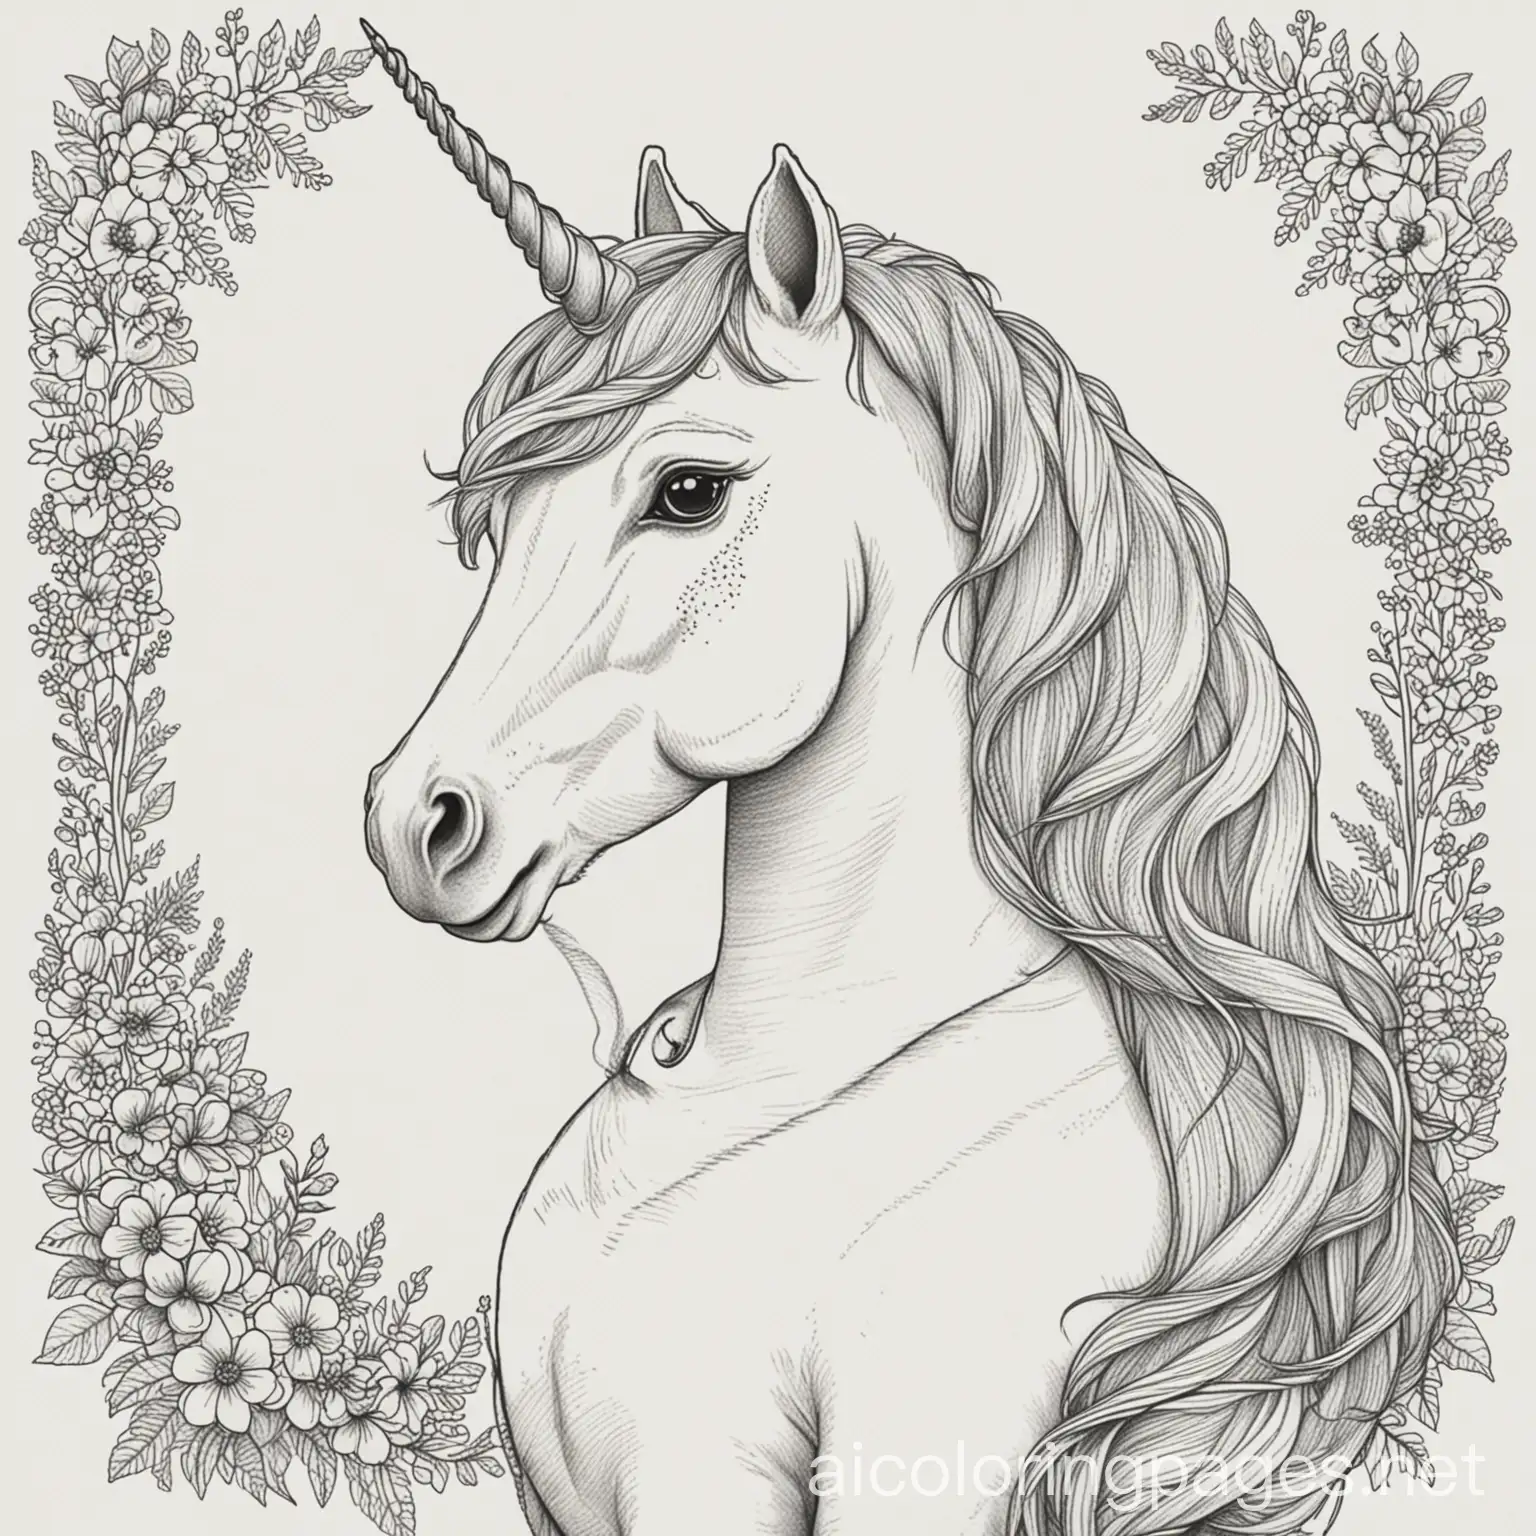 Unicorn-Wedding-Coloring-Page-Elegant-Line-Art-on-White-Background